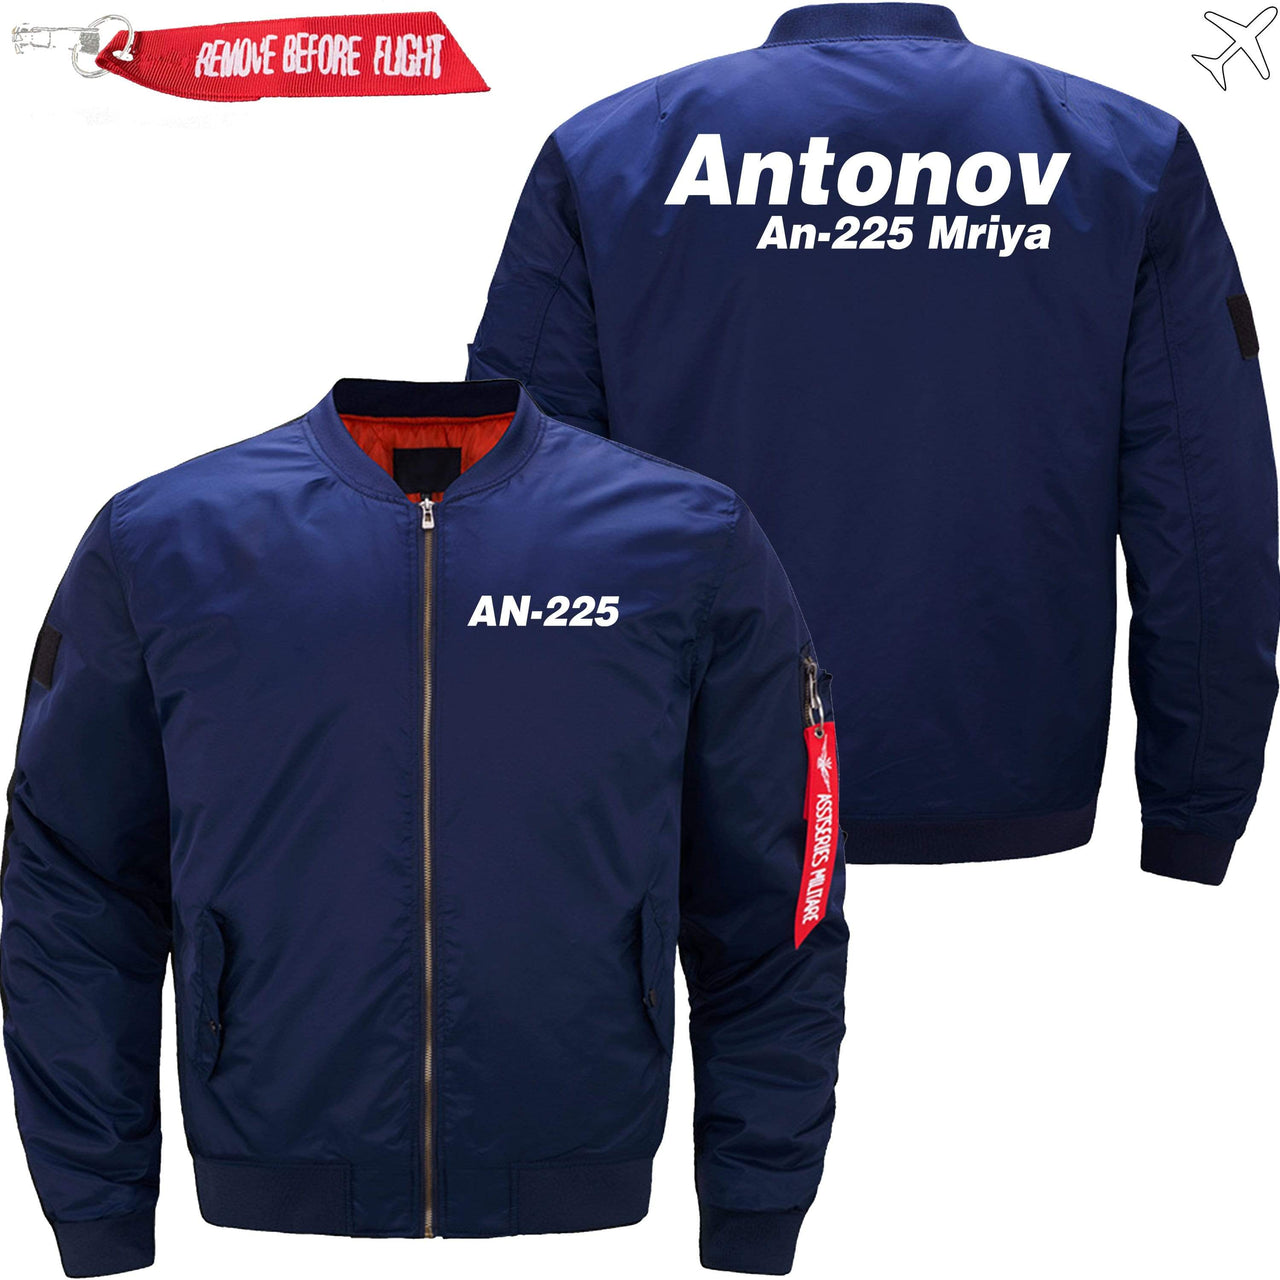 ANTONOV AN-225 MRIYAIRBUS - JACKET THE AV8R